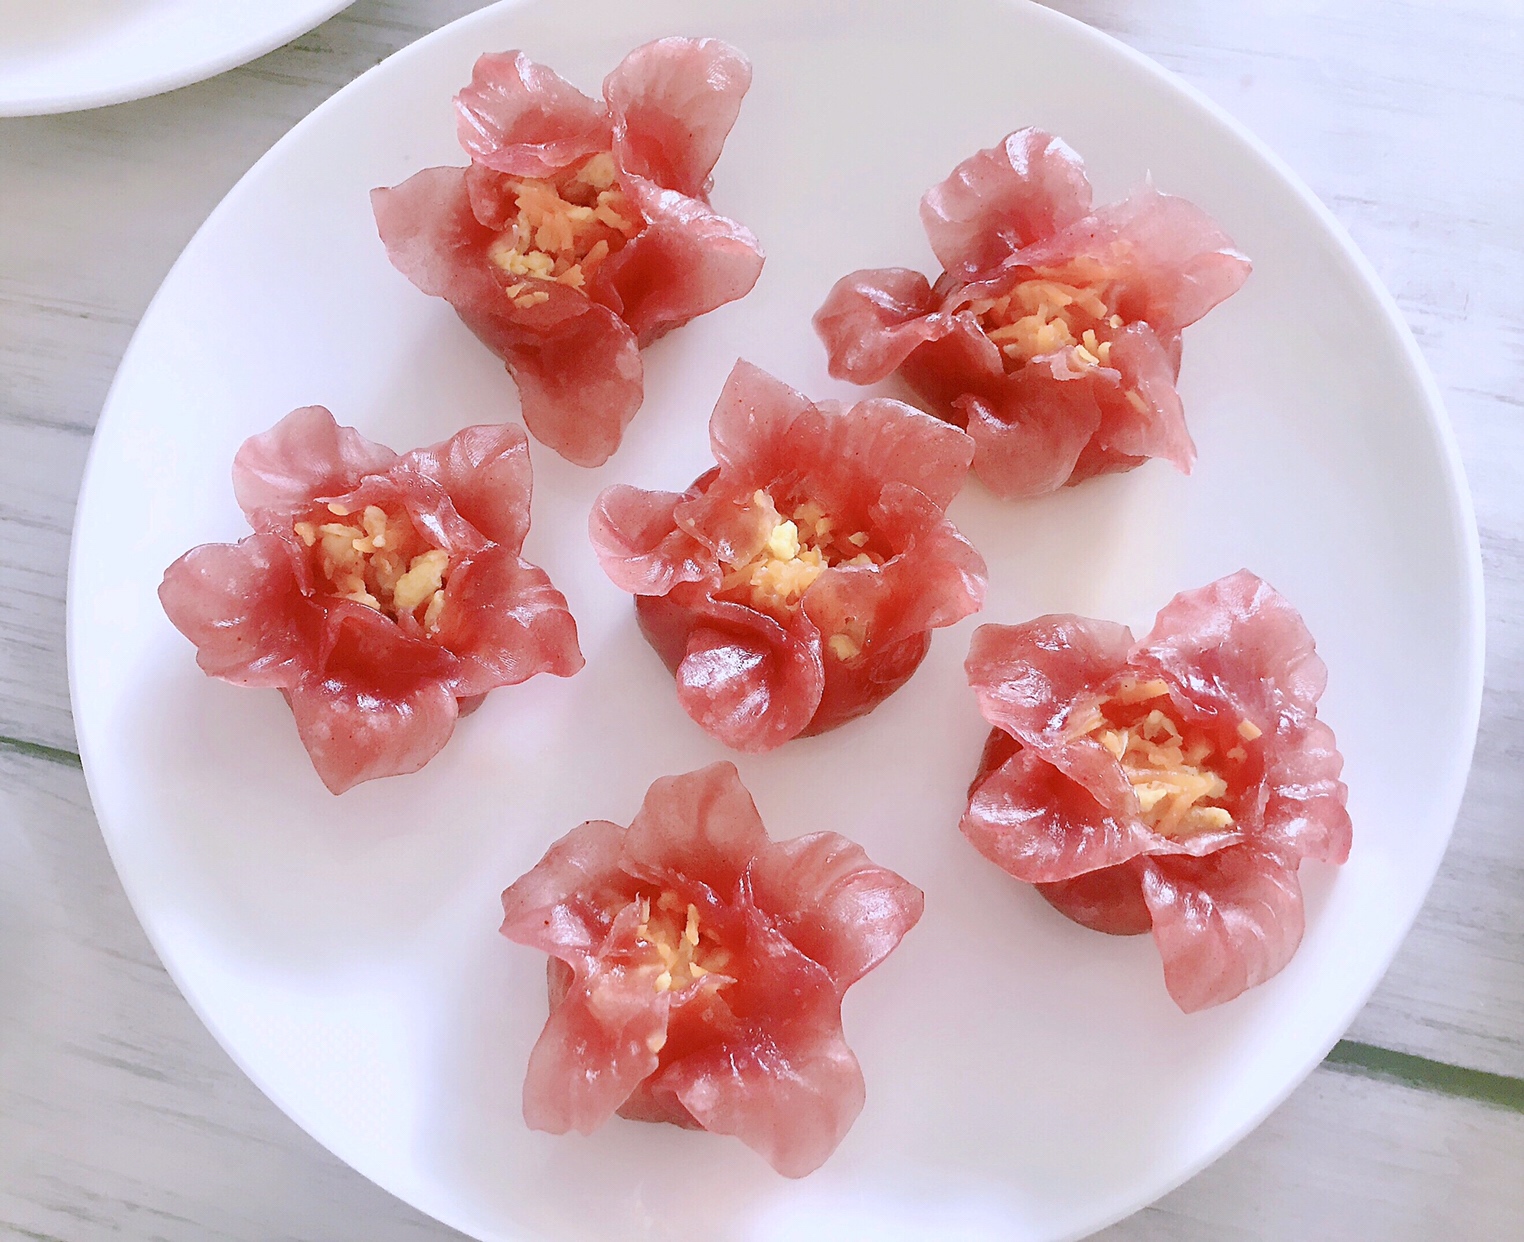 水晶蒸饺 樱花图片